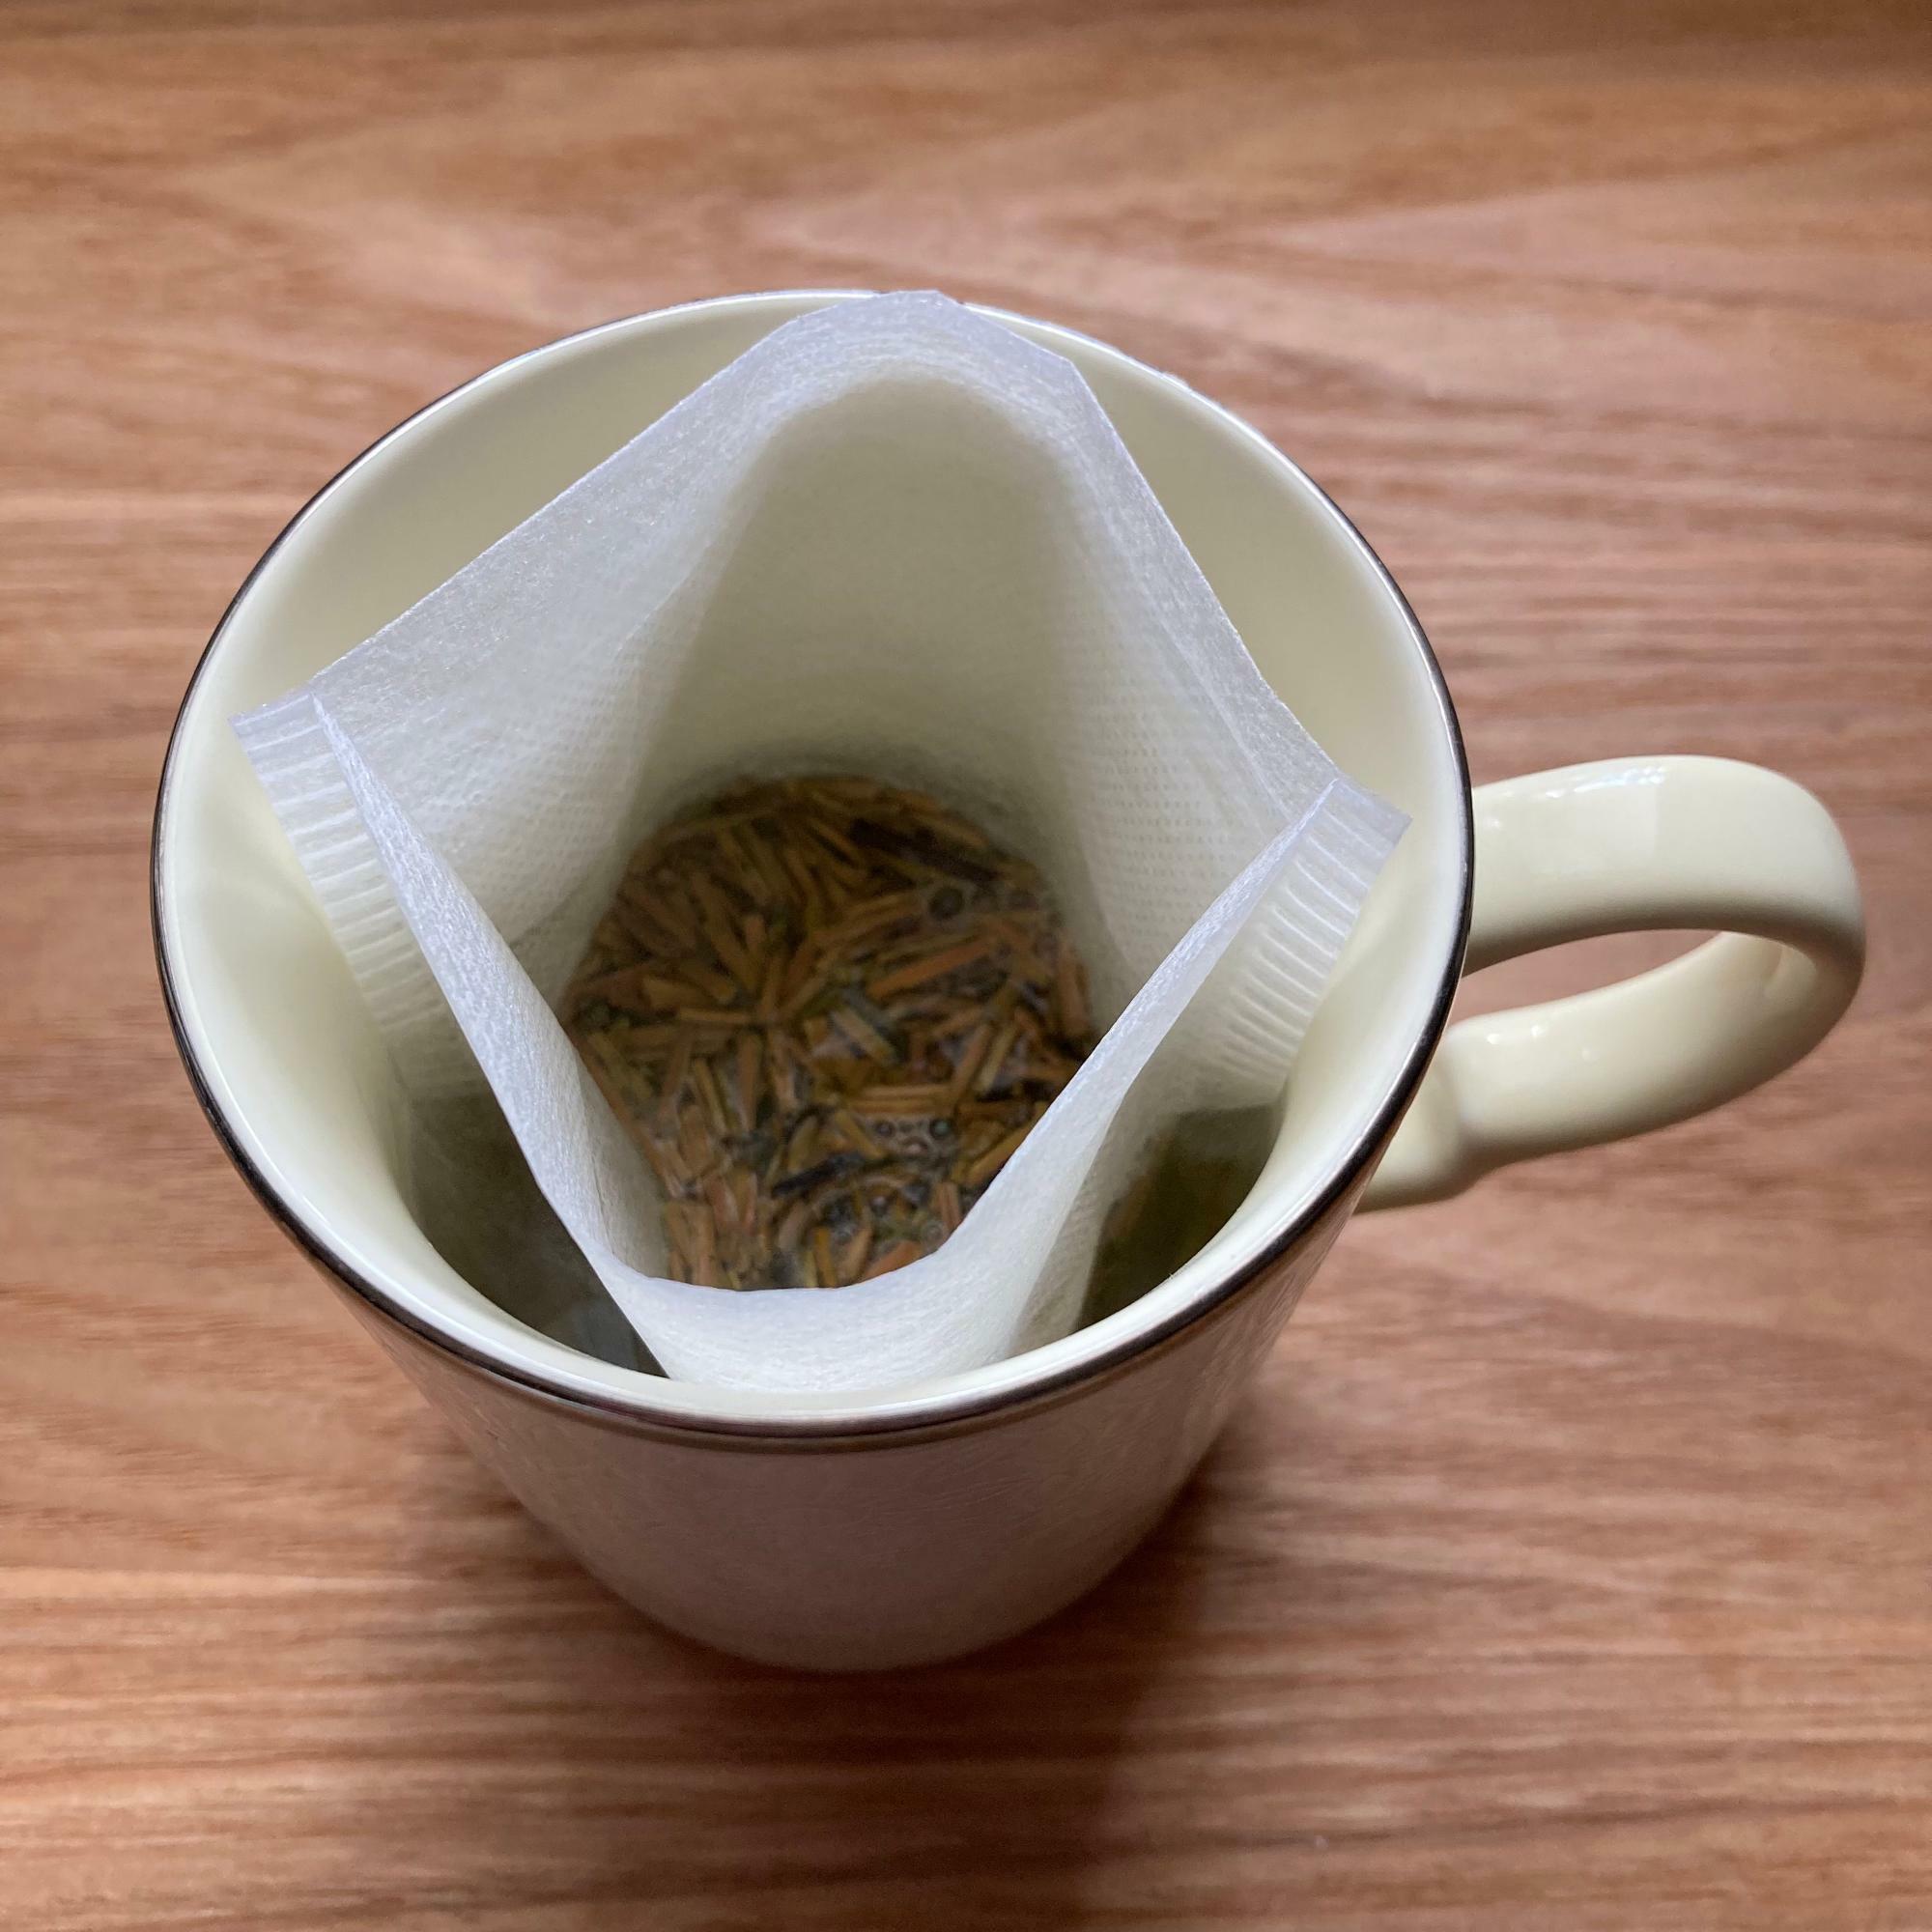 お湯を入れてから待つ時間は茶葉から立ちのぼる香りを楽しむ時間。ほんの少しの時間でもお茶の香りで癒されます。